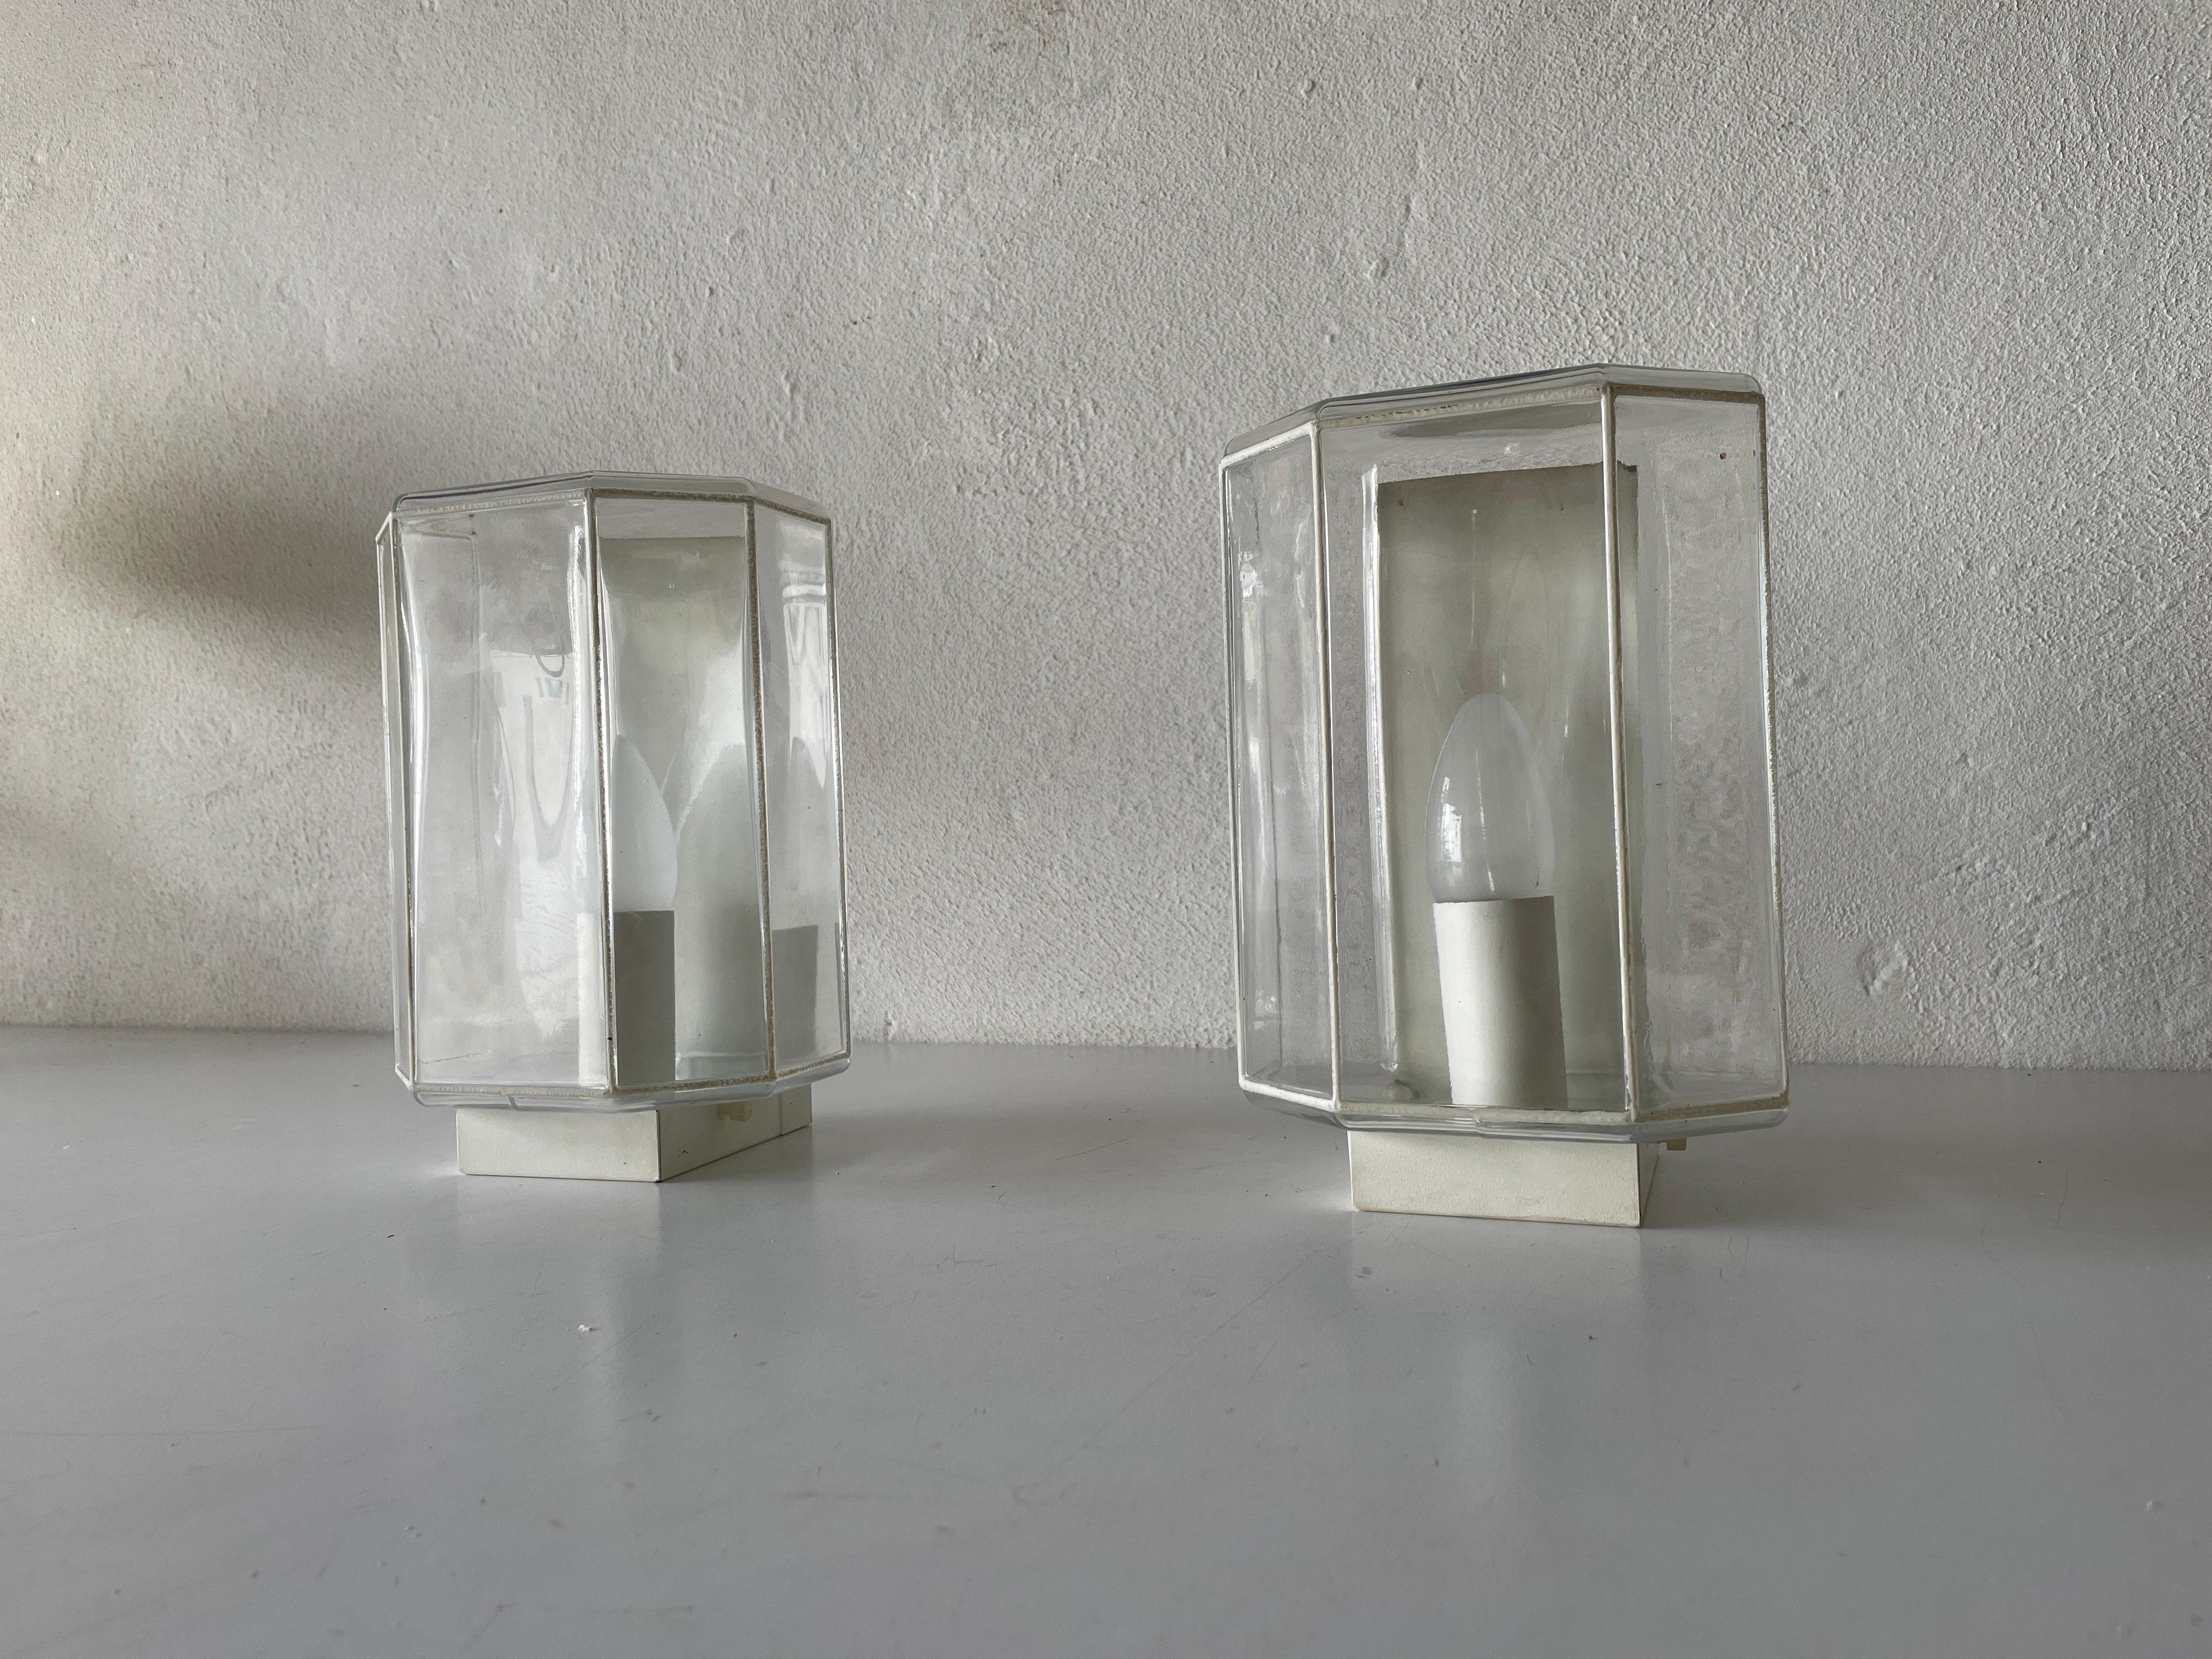 Paar Wandleuchter aus strukturiertem weißem Eisen, 1960er Jahre, Limburg, Deutschland

Sehr elegante und minimalistische Wandlampen
Die Lampe ist in sehr gutem Zustand.

Diese Lampen funktionieren mit E14 Standard-Glühbirnen. 
Verkabelt und